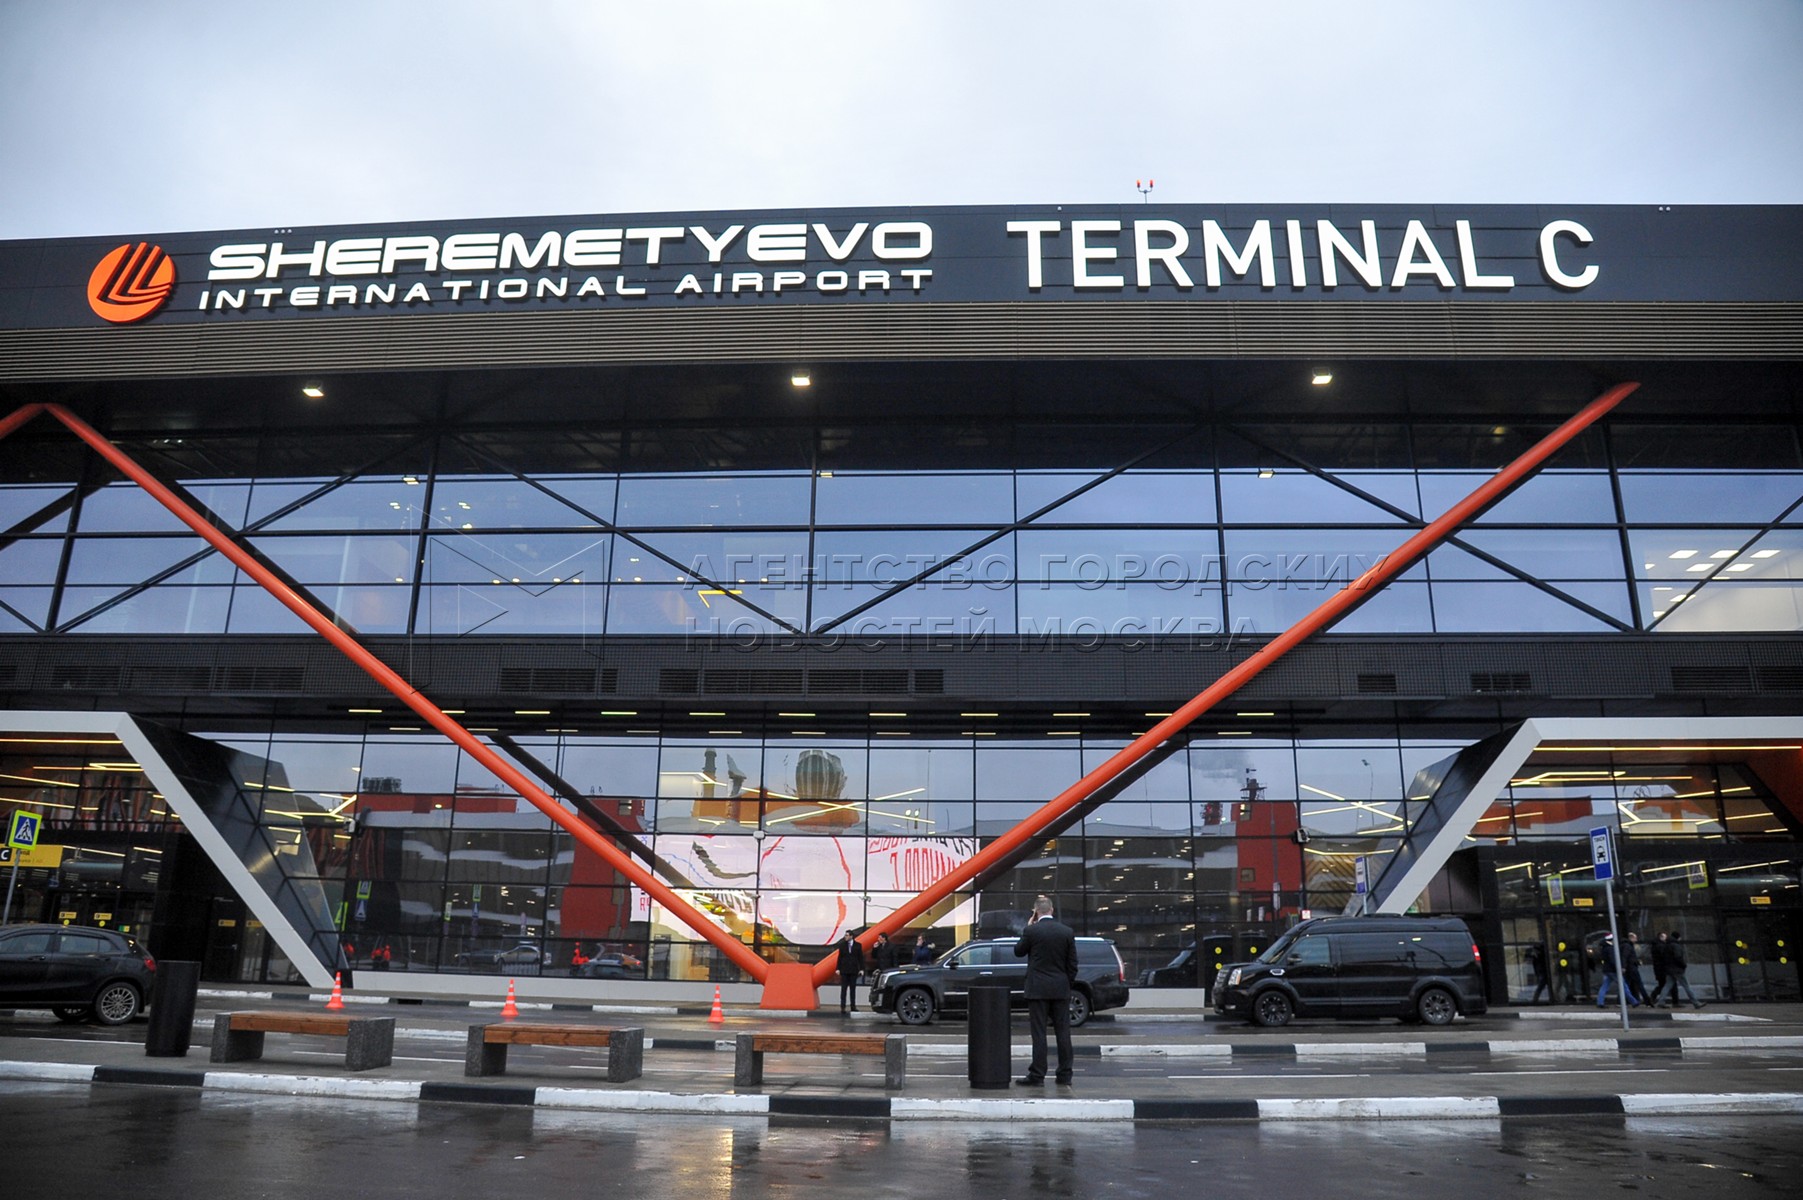 Вход в терминал с. Международный аэропорт Шереметьево терминал c. Аэропорт Шереметьево Москва терминал b. Аэропорт Москва Шереметьево терминал б. Terminal c Шереметьево.